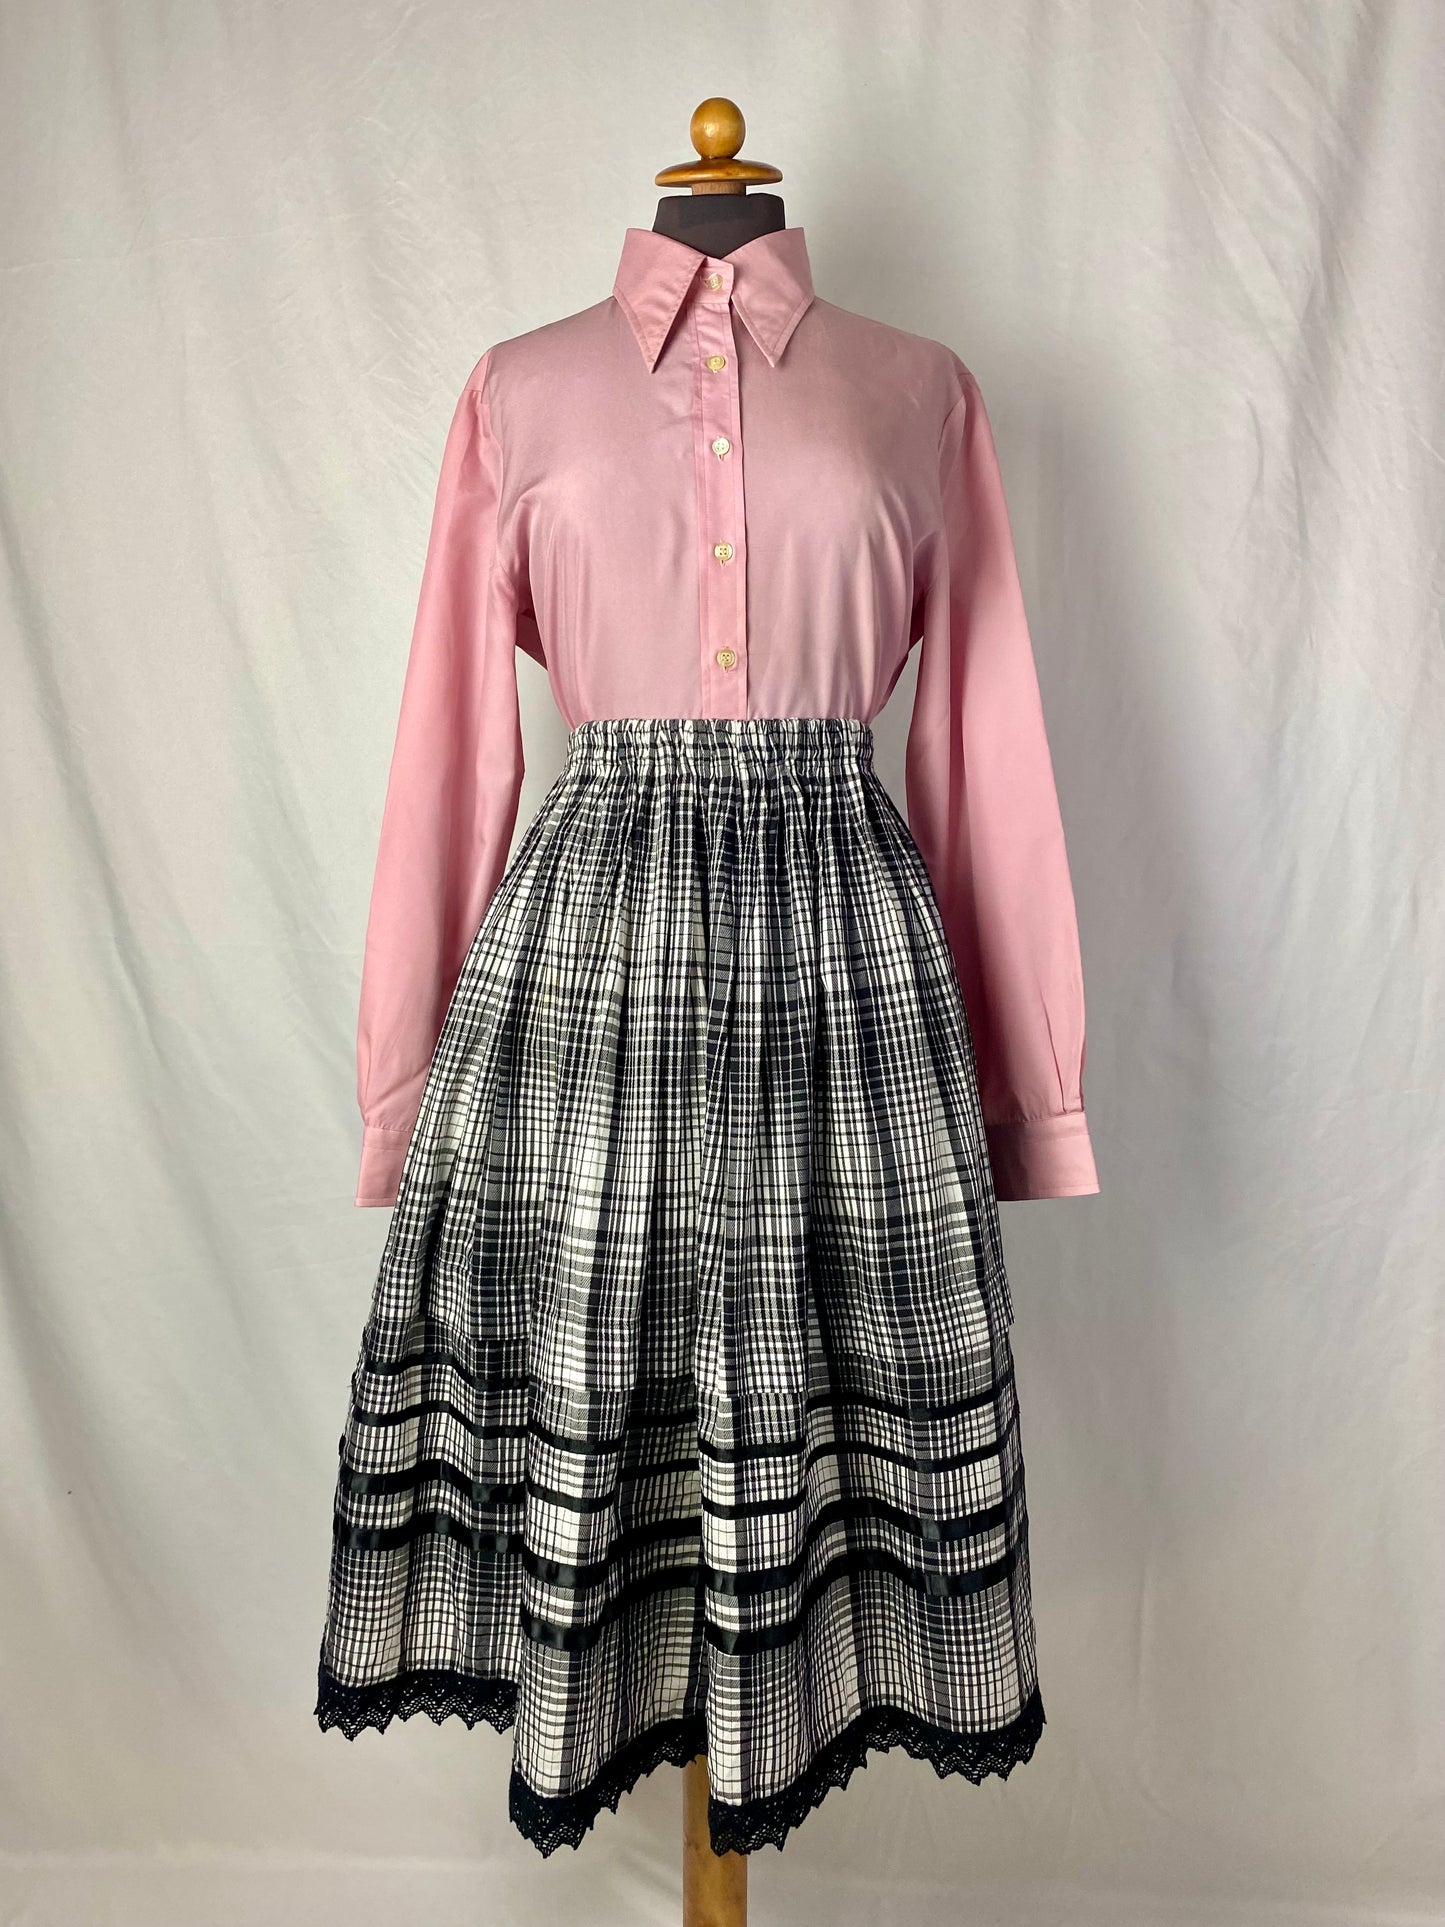 Camicia anni ‘70 rosa - TG. 44